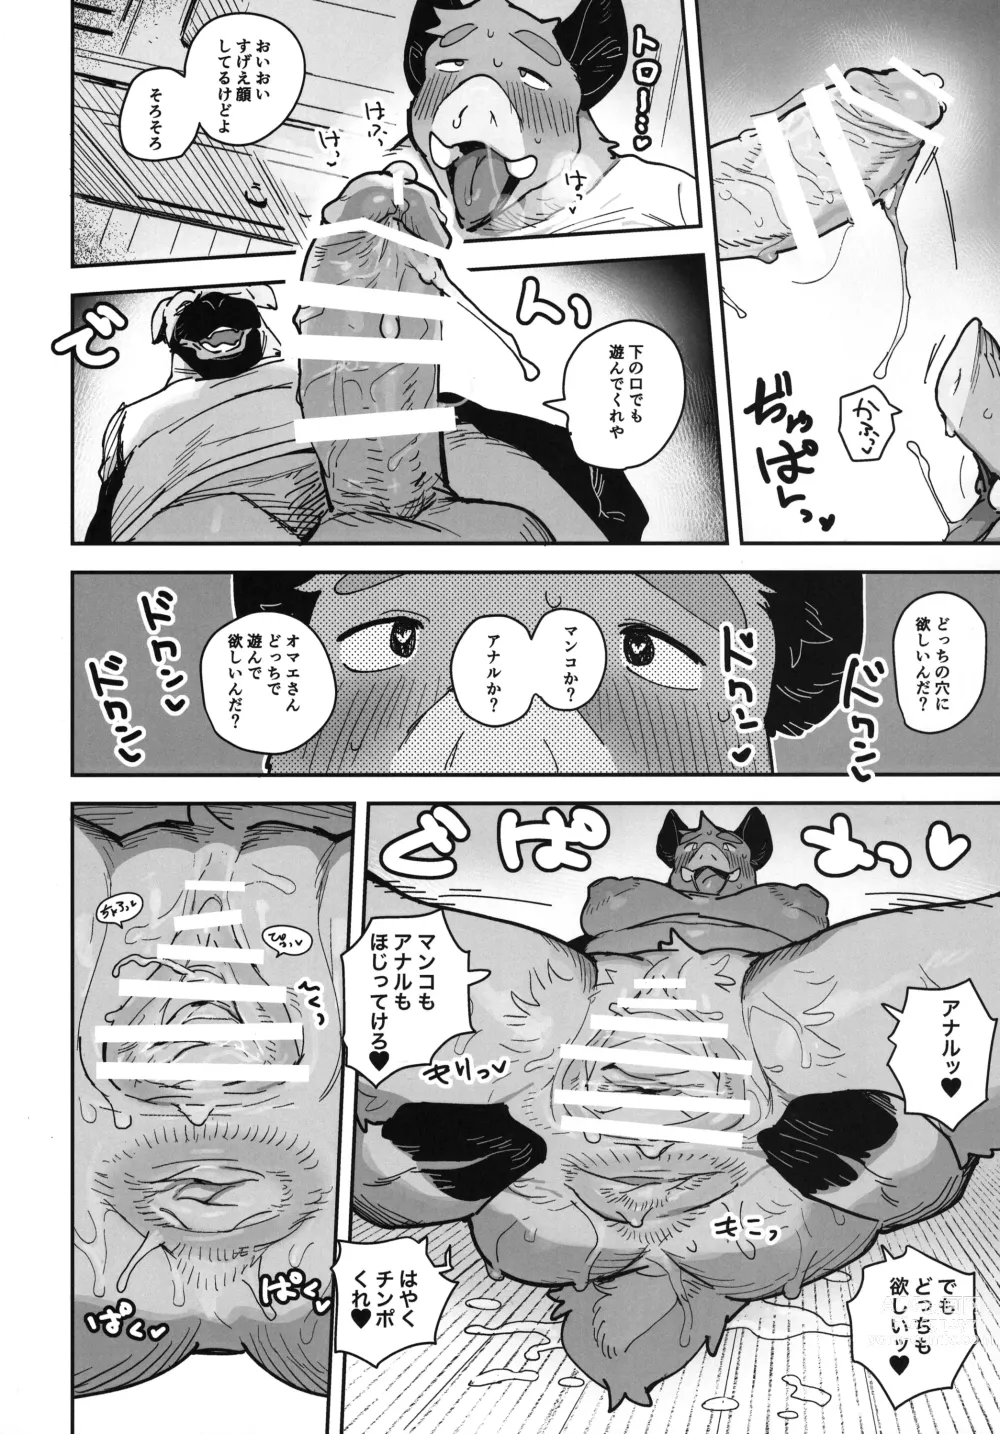 Page 24 of doujinshi Inoshishiri Ana